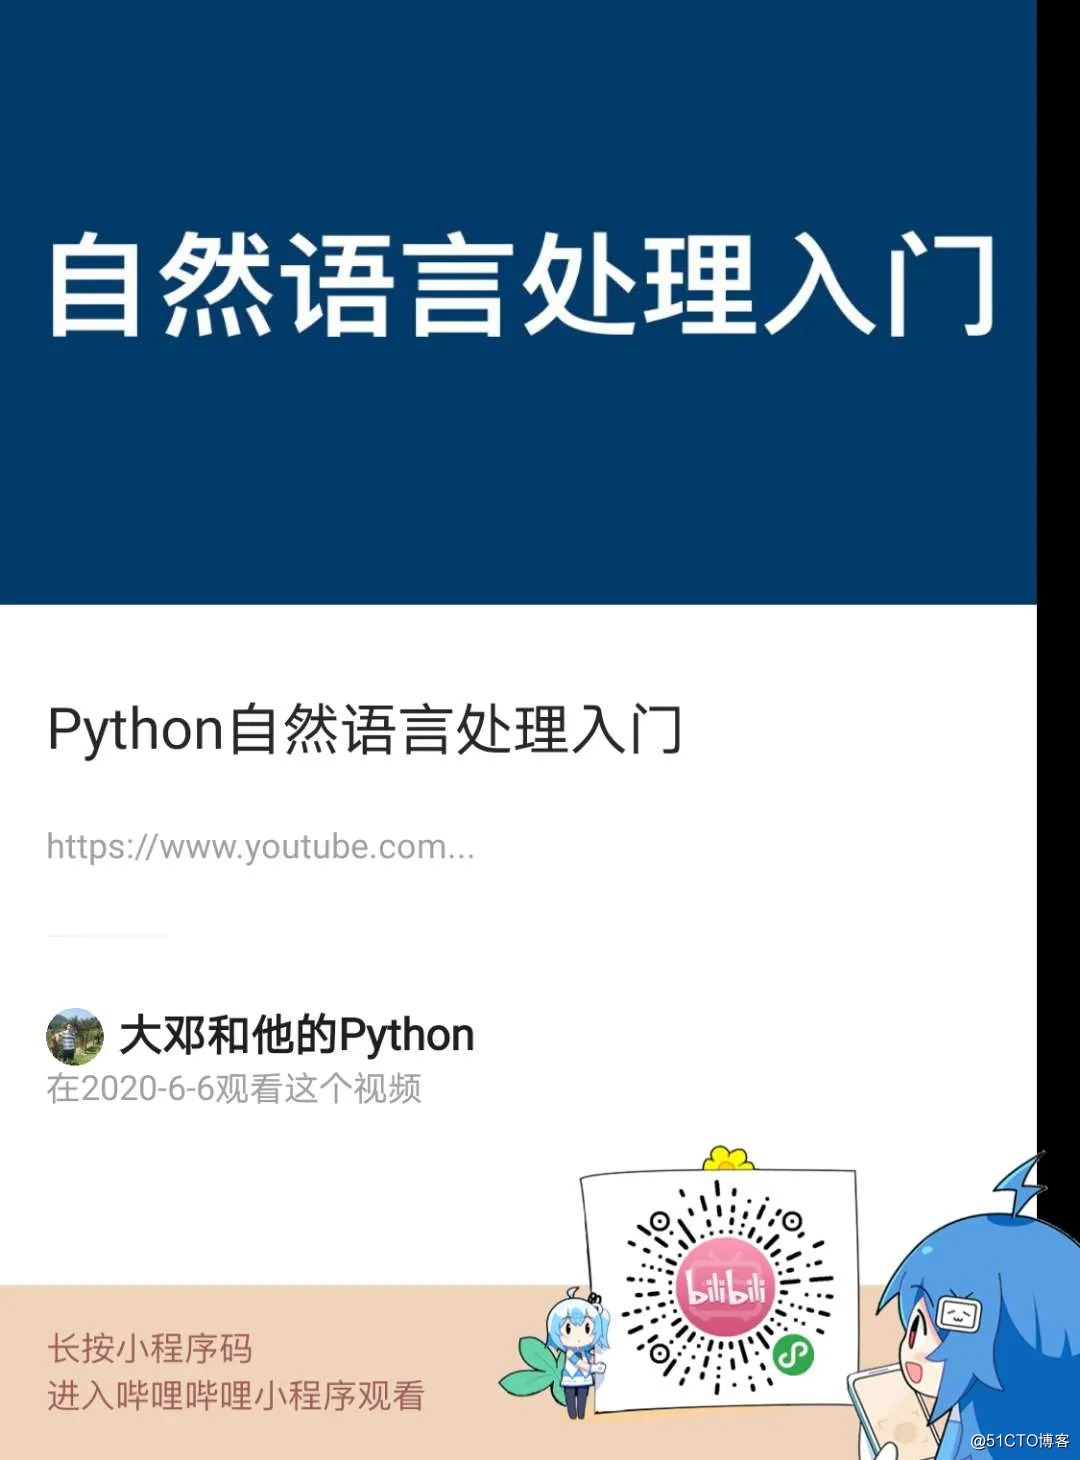 视频 | Python自然语言处理入门